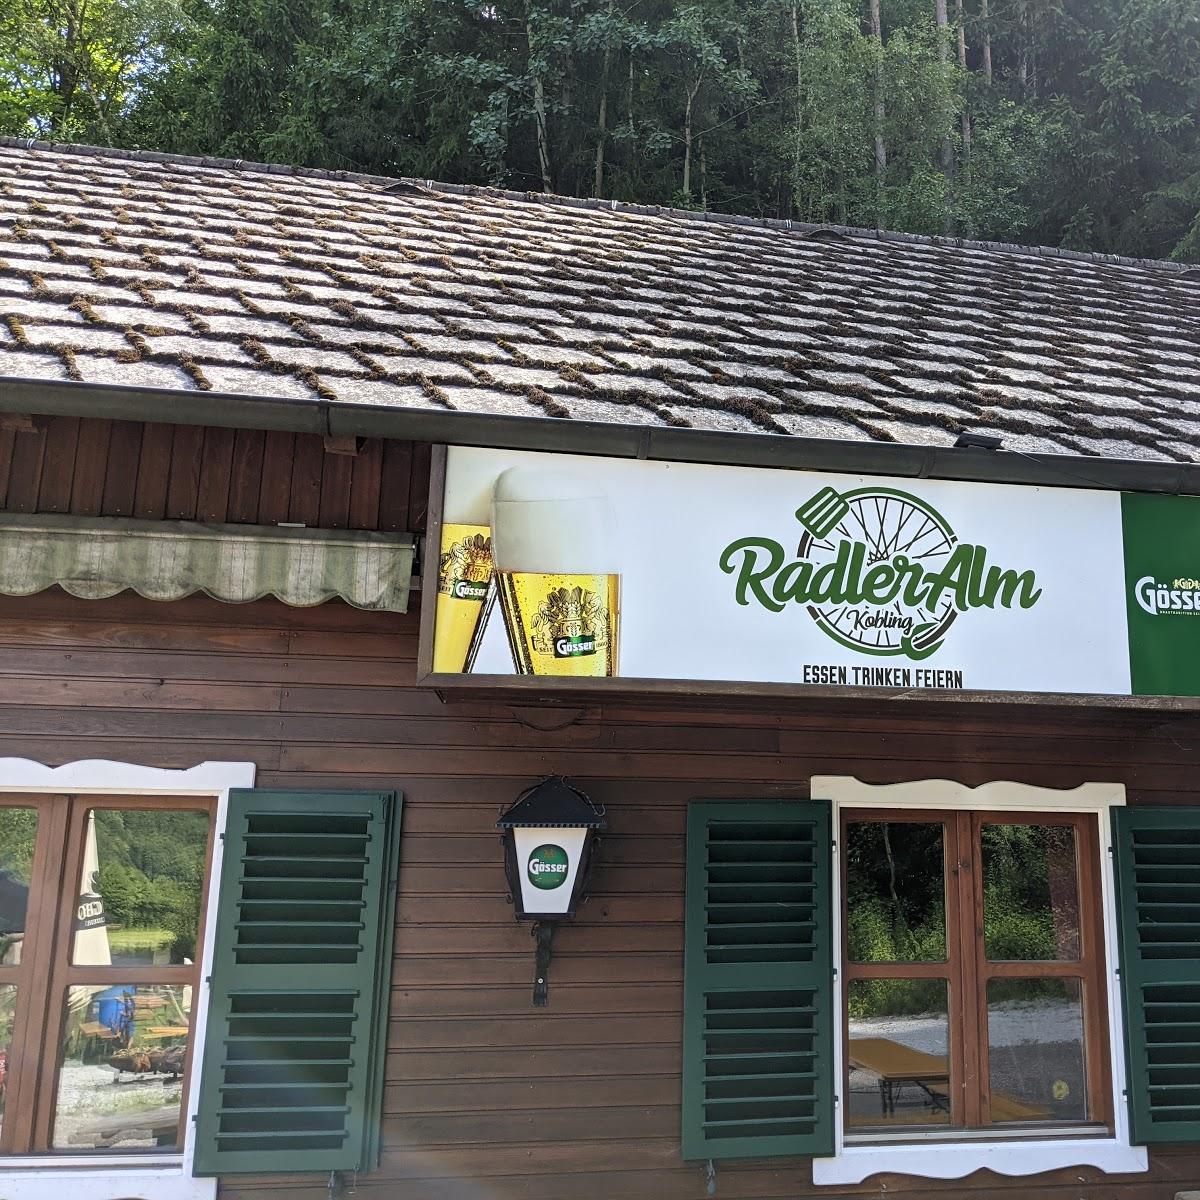 Restaurant "Radleralm" in Kobling